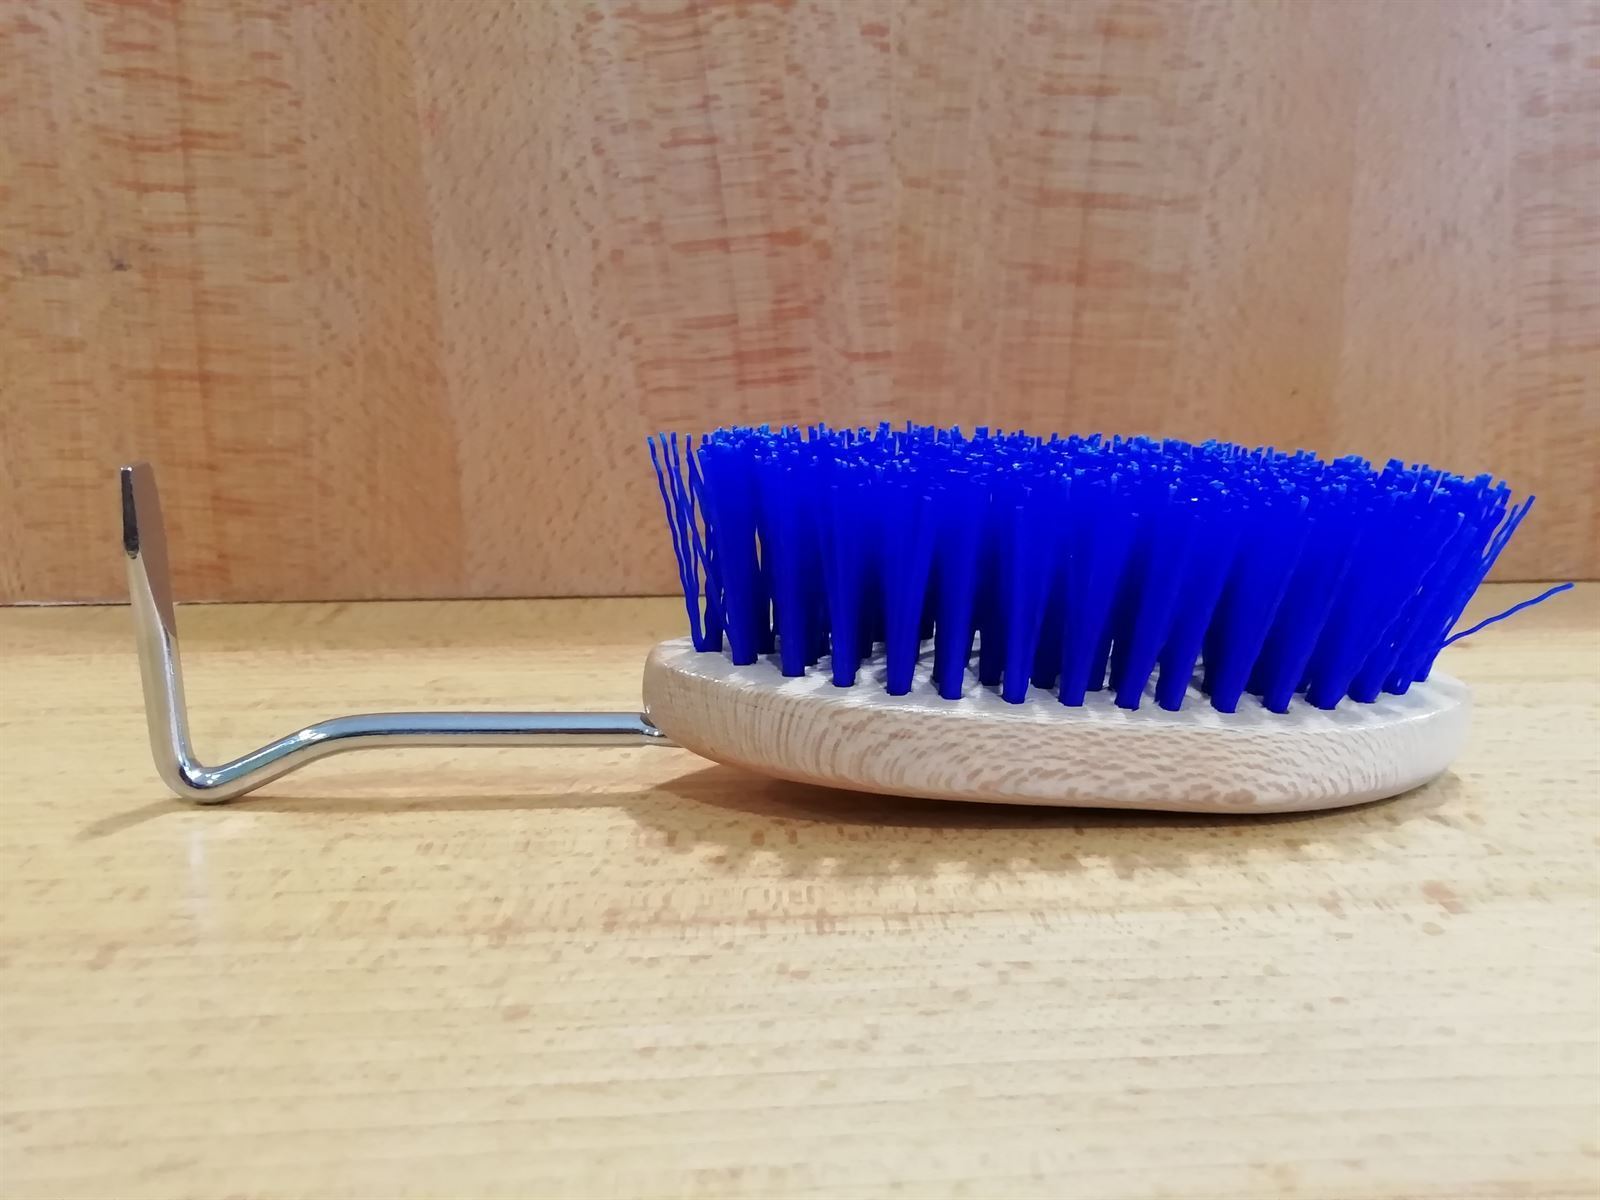 Cepillo mexil con limpiacascos - Imagen 1